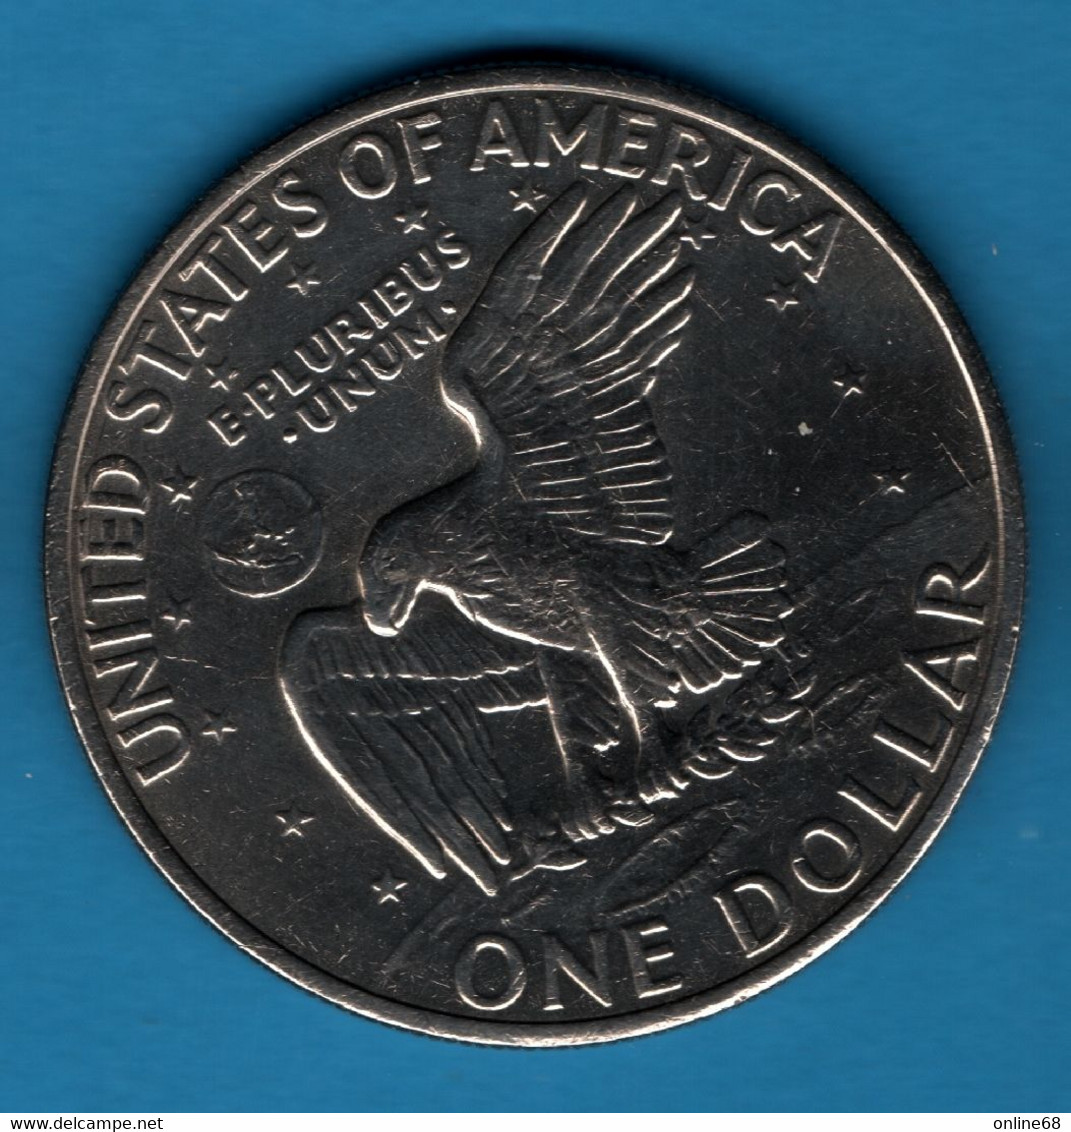 USA 1 DOLLAR 1972 KM# 203 "Eisenhower Dollar" - 1971-1978: Eisenhower